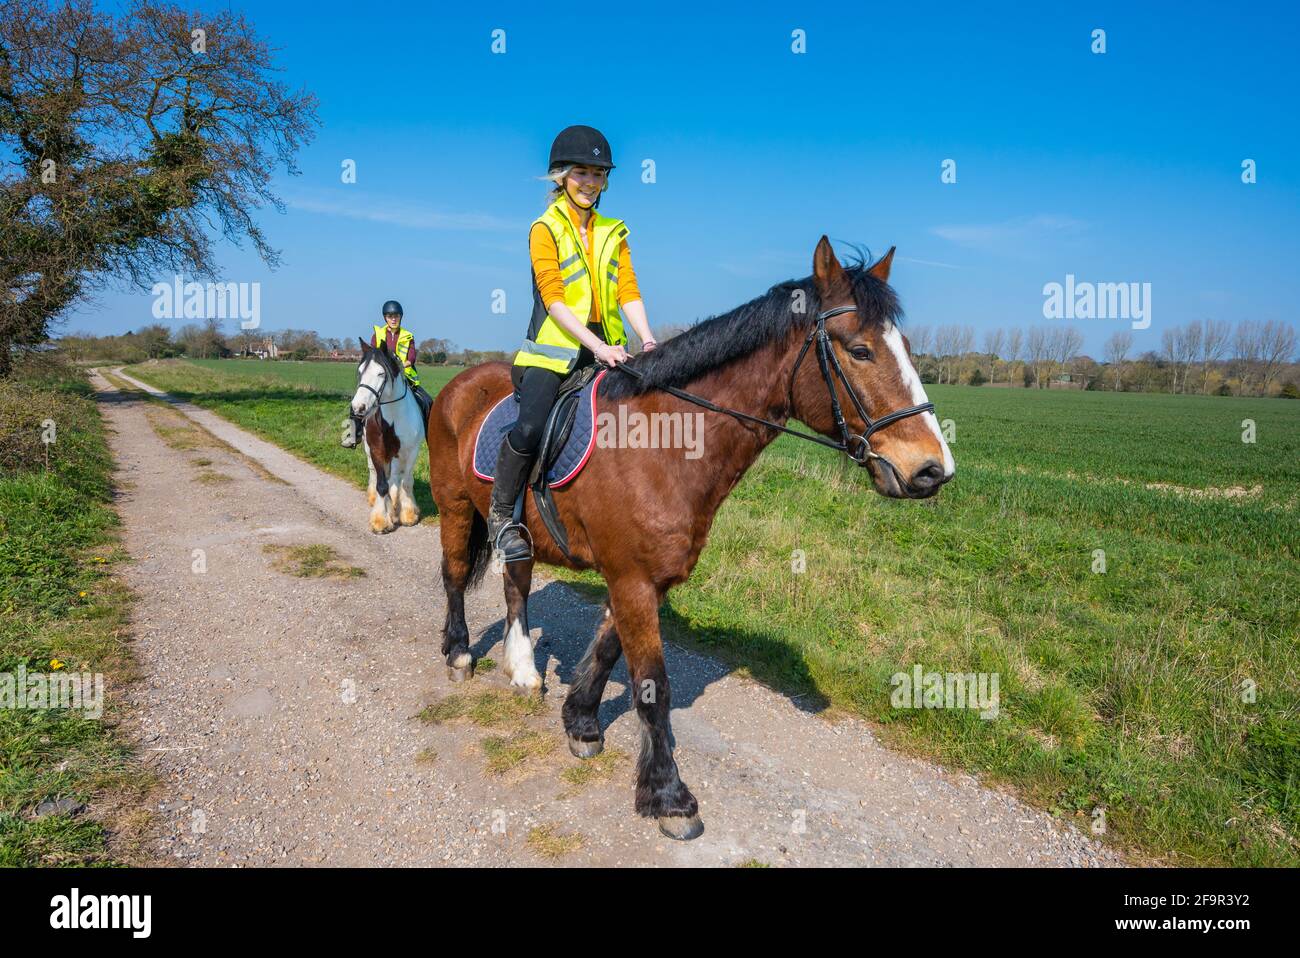 Junge Frauen reiten auf einem Landweg durch die Landschaft an einem sonnigen Frühlingstag in West Sussex, Großbritannien. Reiten / Reiter. Stockfoto